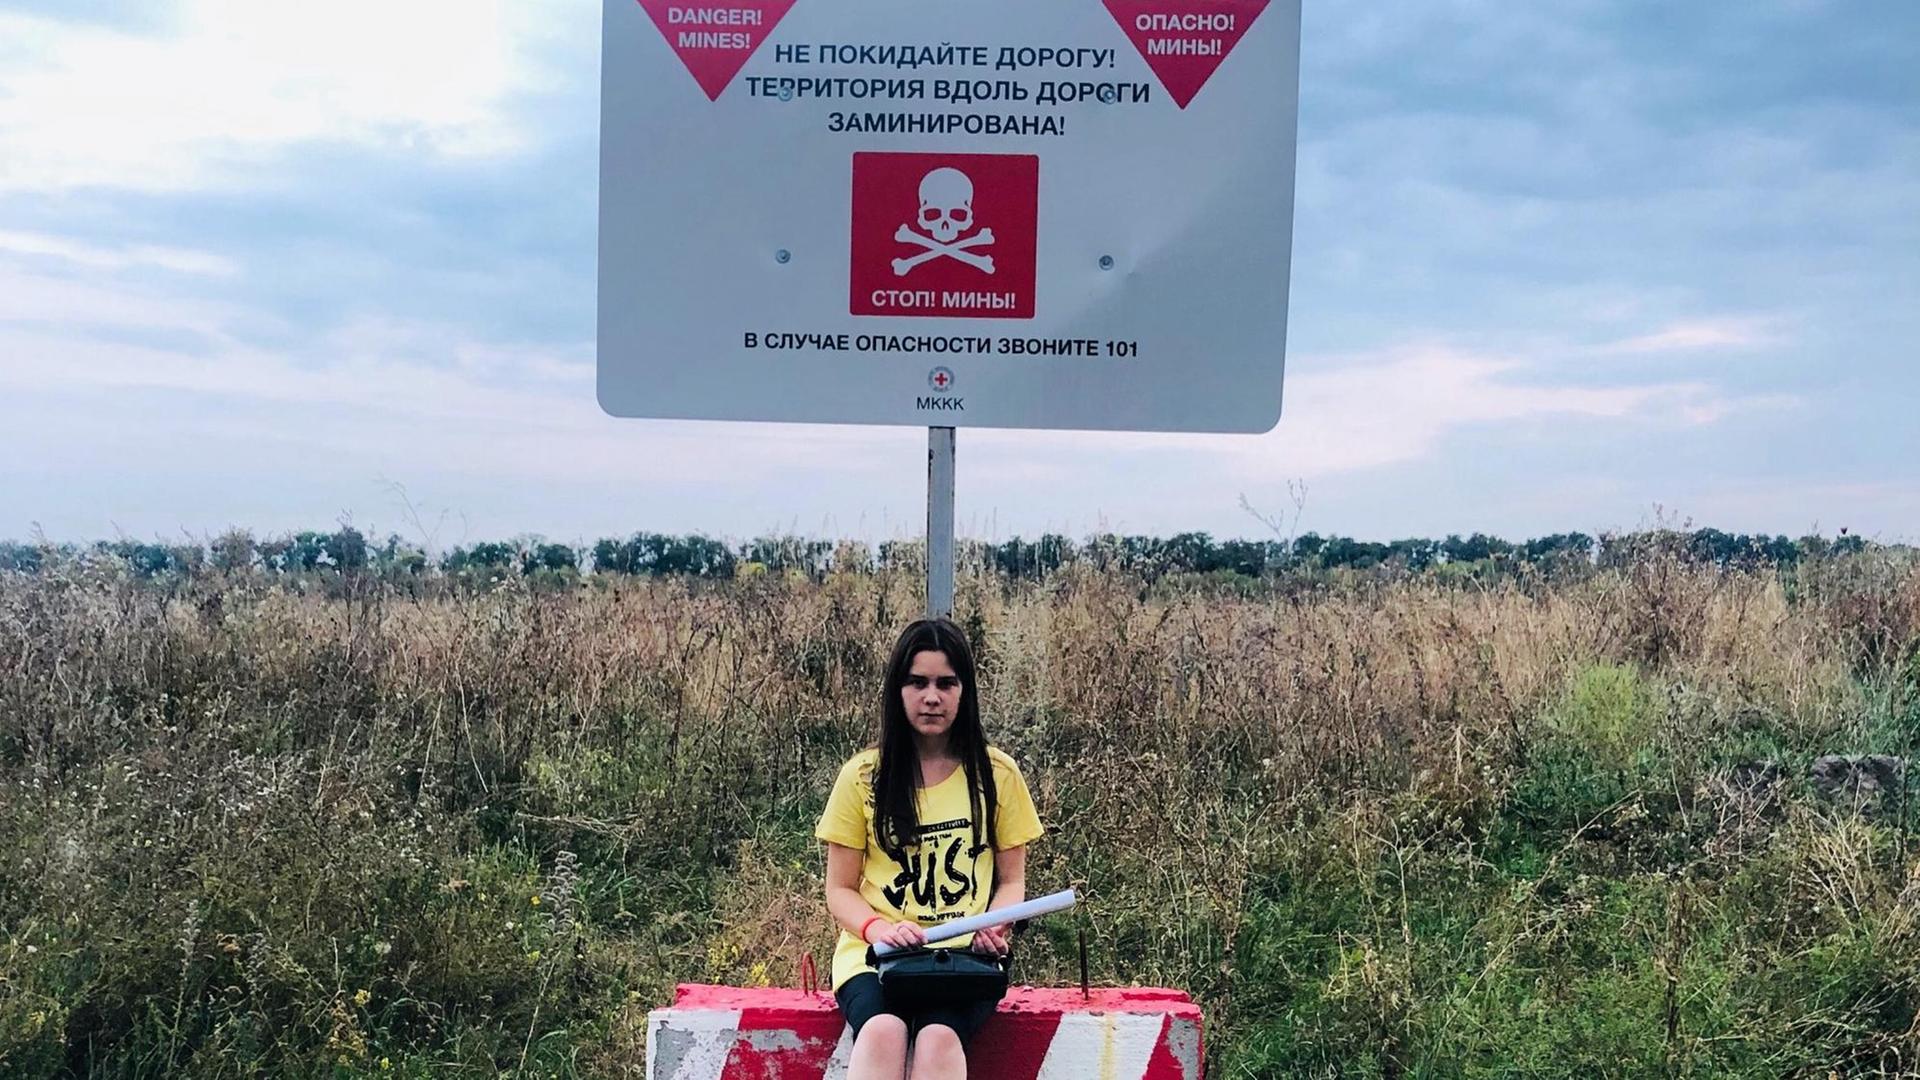 Ein Mädchen sitzt am Rand eines Feldes in der Ukraine.